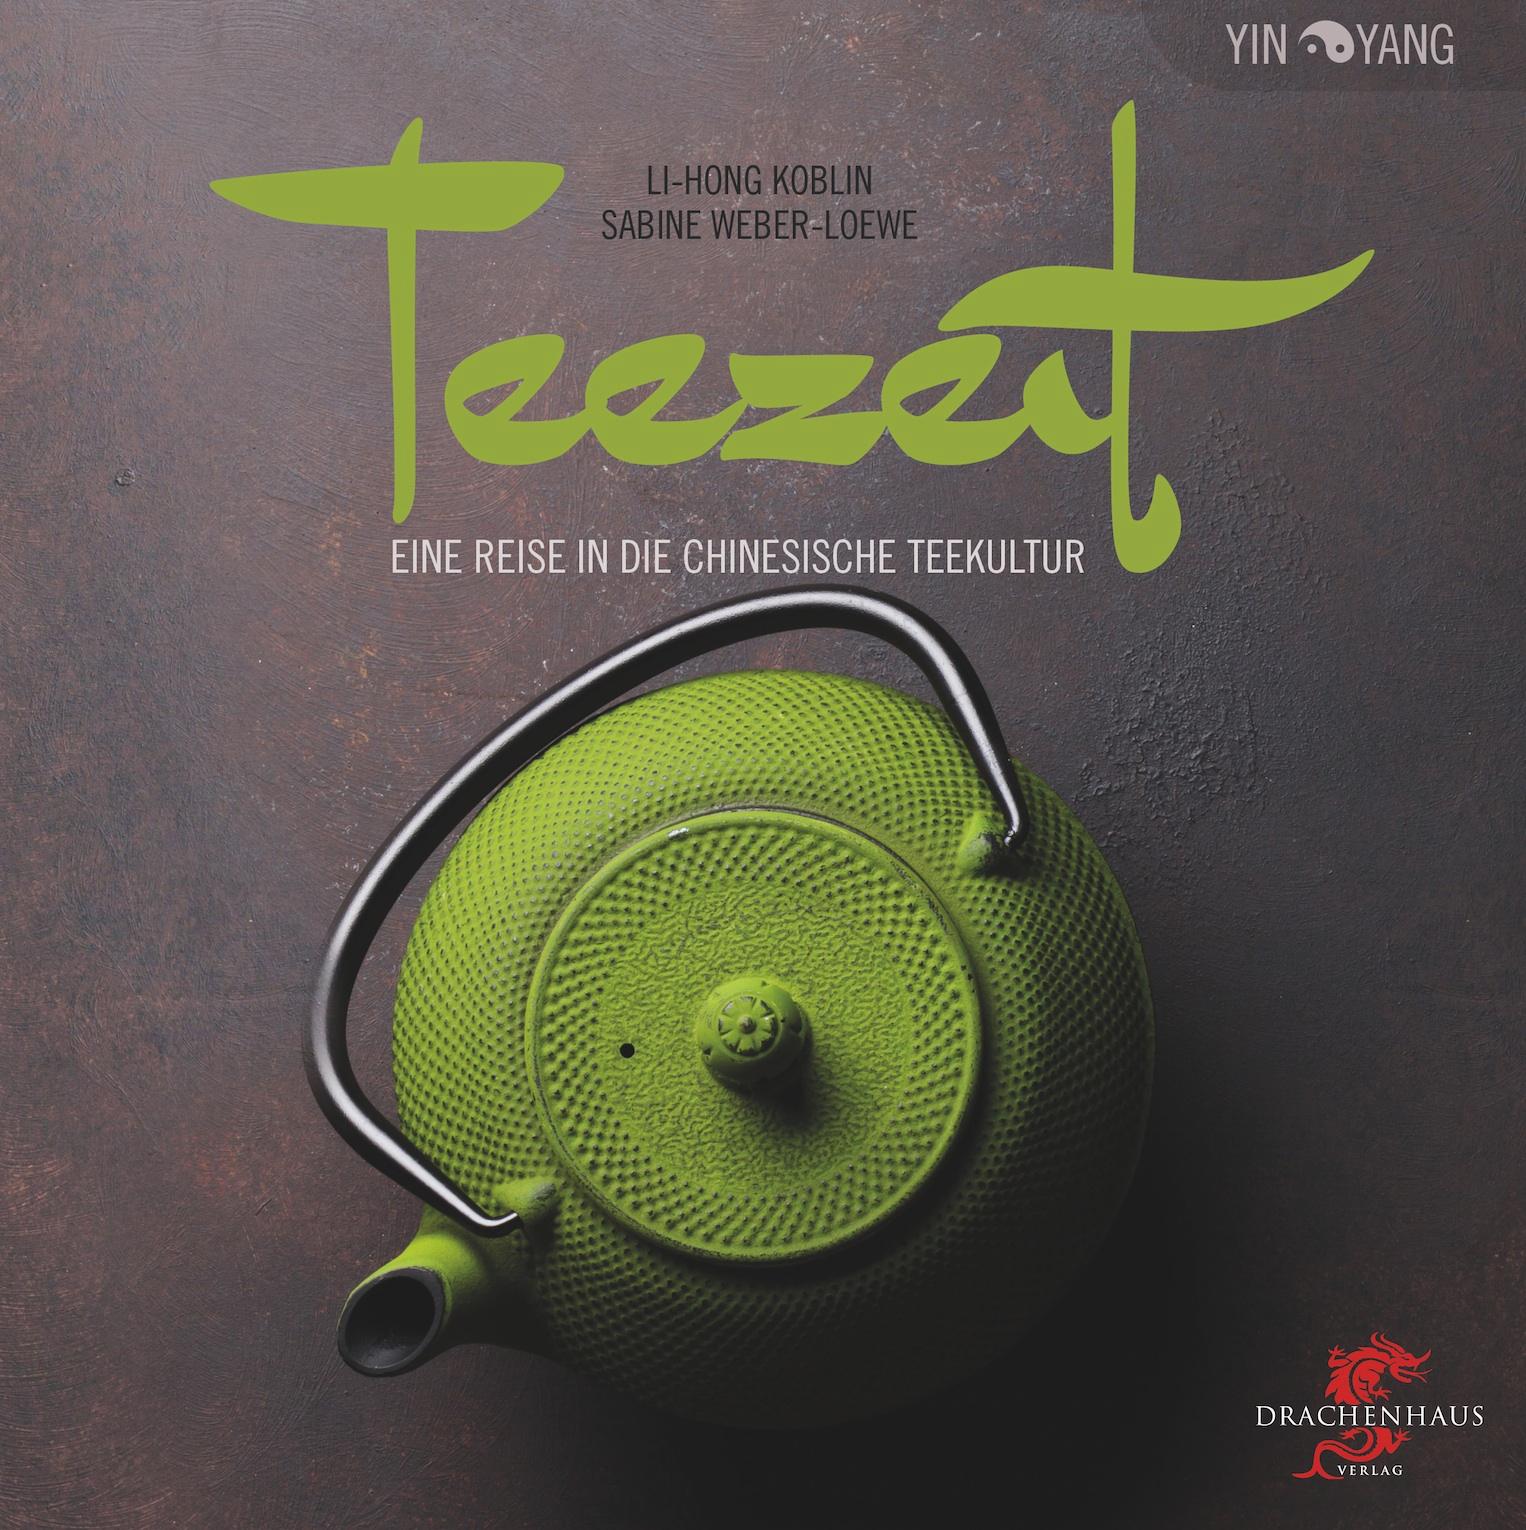 Teezeit / Eine Reise in die chinesische Teekultur / Li-Hong Koblin (u. a.) / Buch / Yin-Yang / 80 S. / Deutsch / 2017 / Drachenhaus Verlag / EAN 9783943314373 - Koblin, Li-Hong